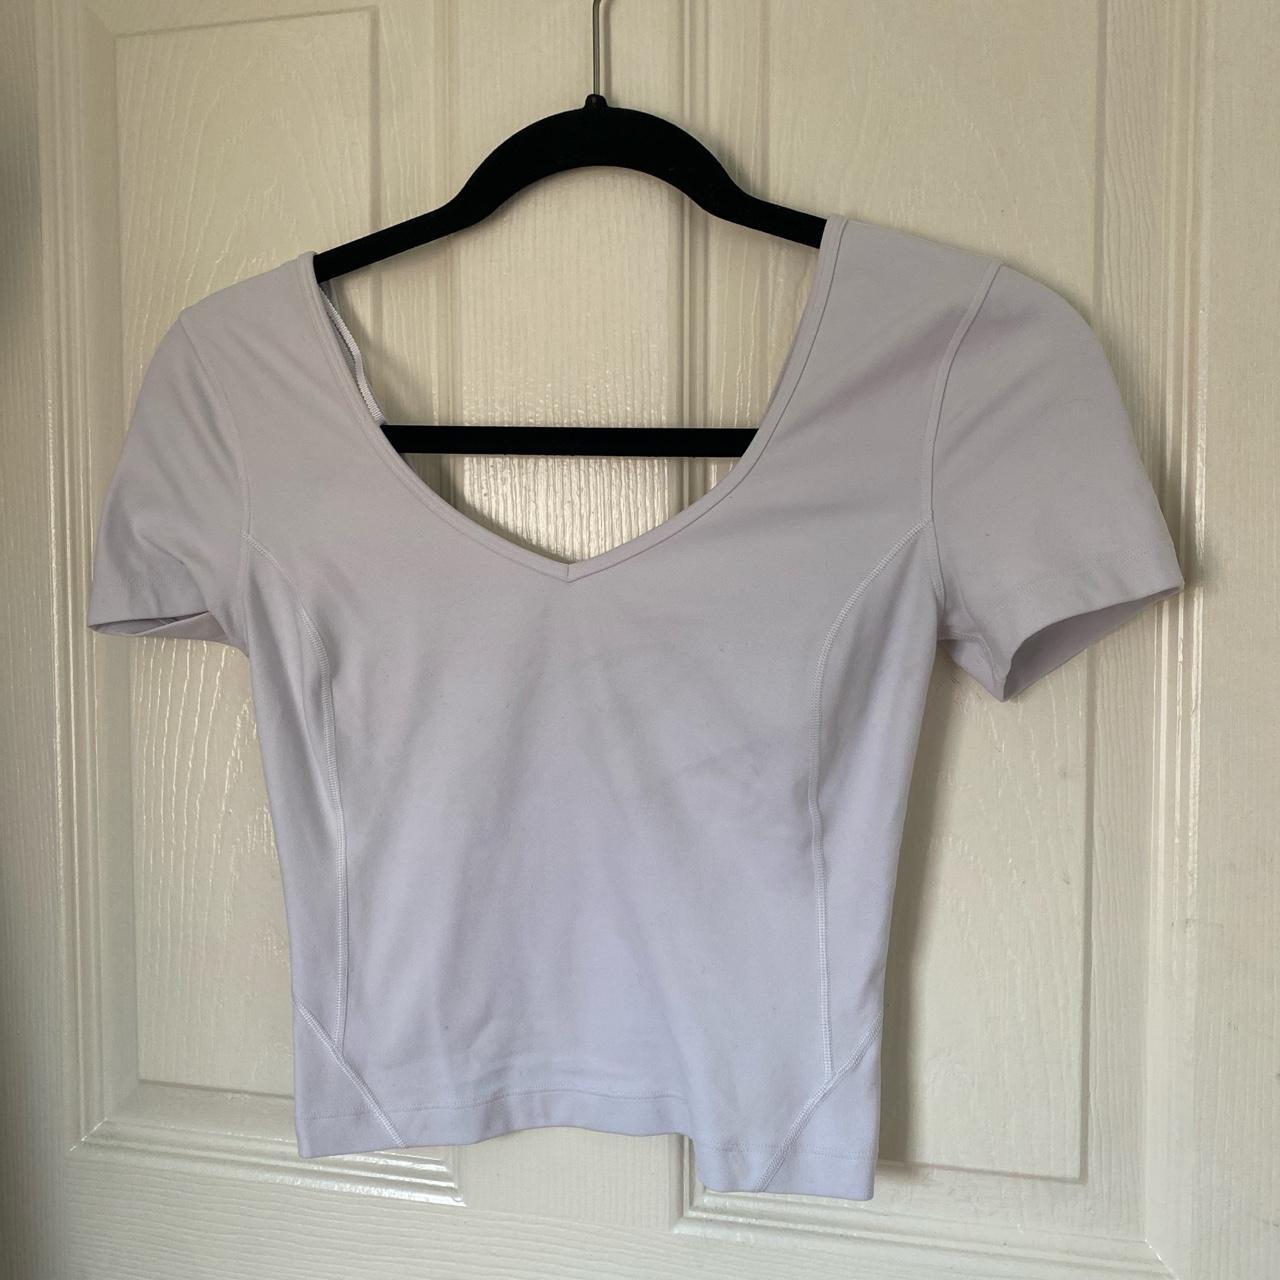 Lululemon align tshirt in white size 2! Originally... - Depop